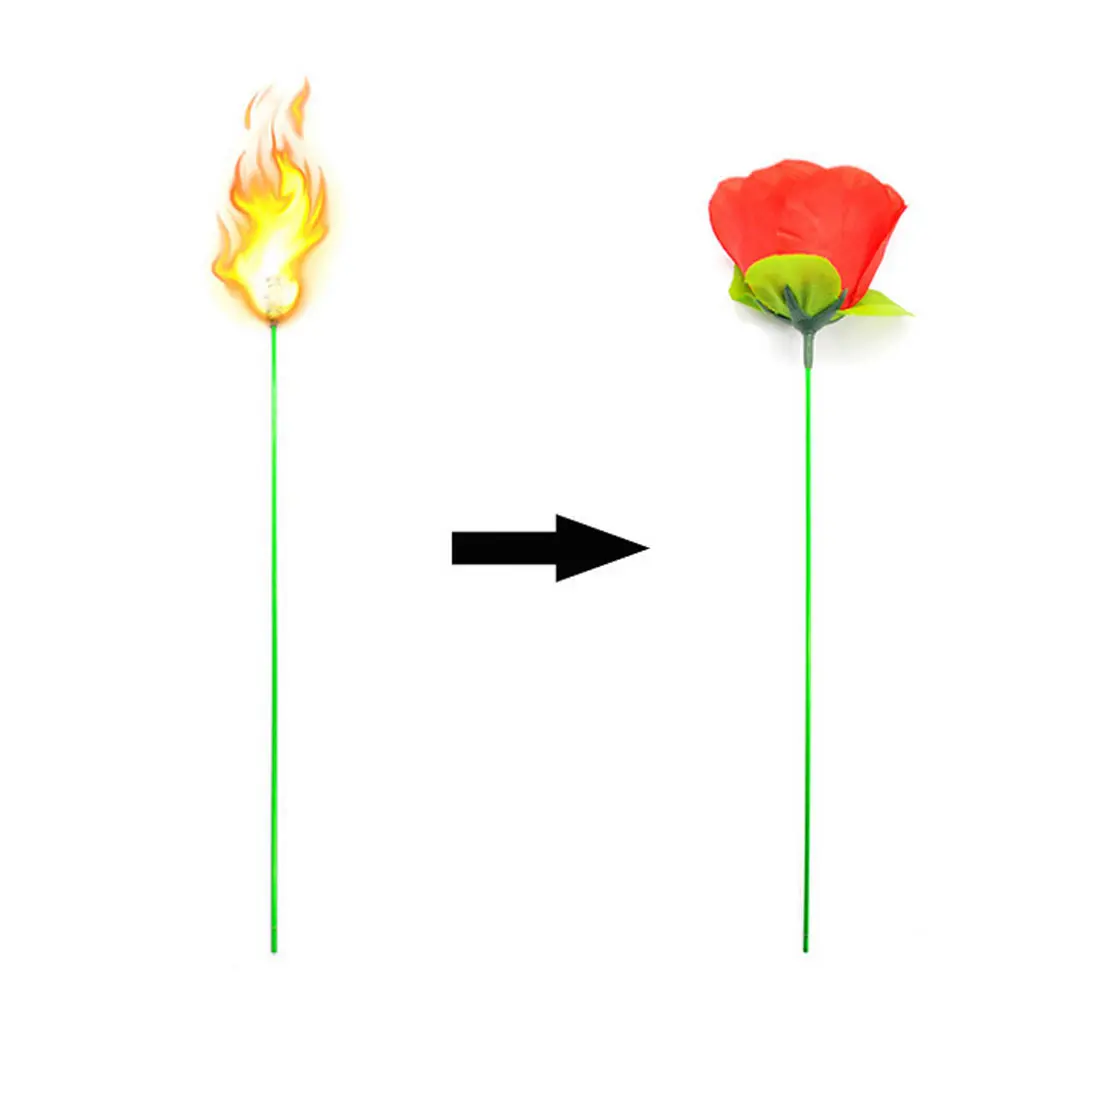 Реквизит для выступлений с розами иллюзорный реквизит фонарь с цветами фонарь с розами огонь магический трюк пламя появляющийся цветок профессиональный магический